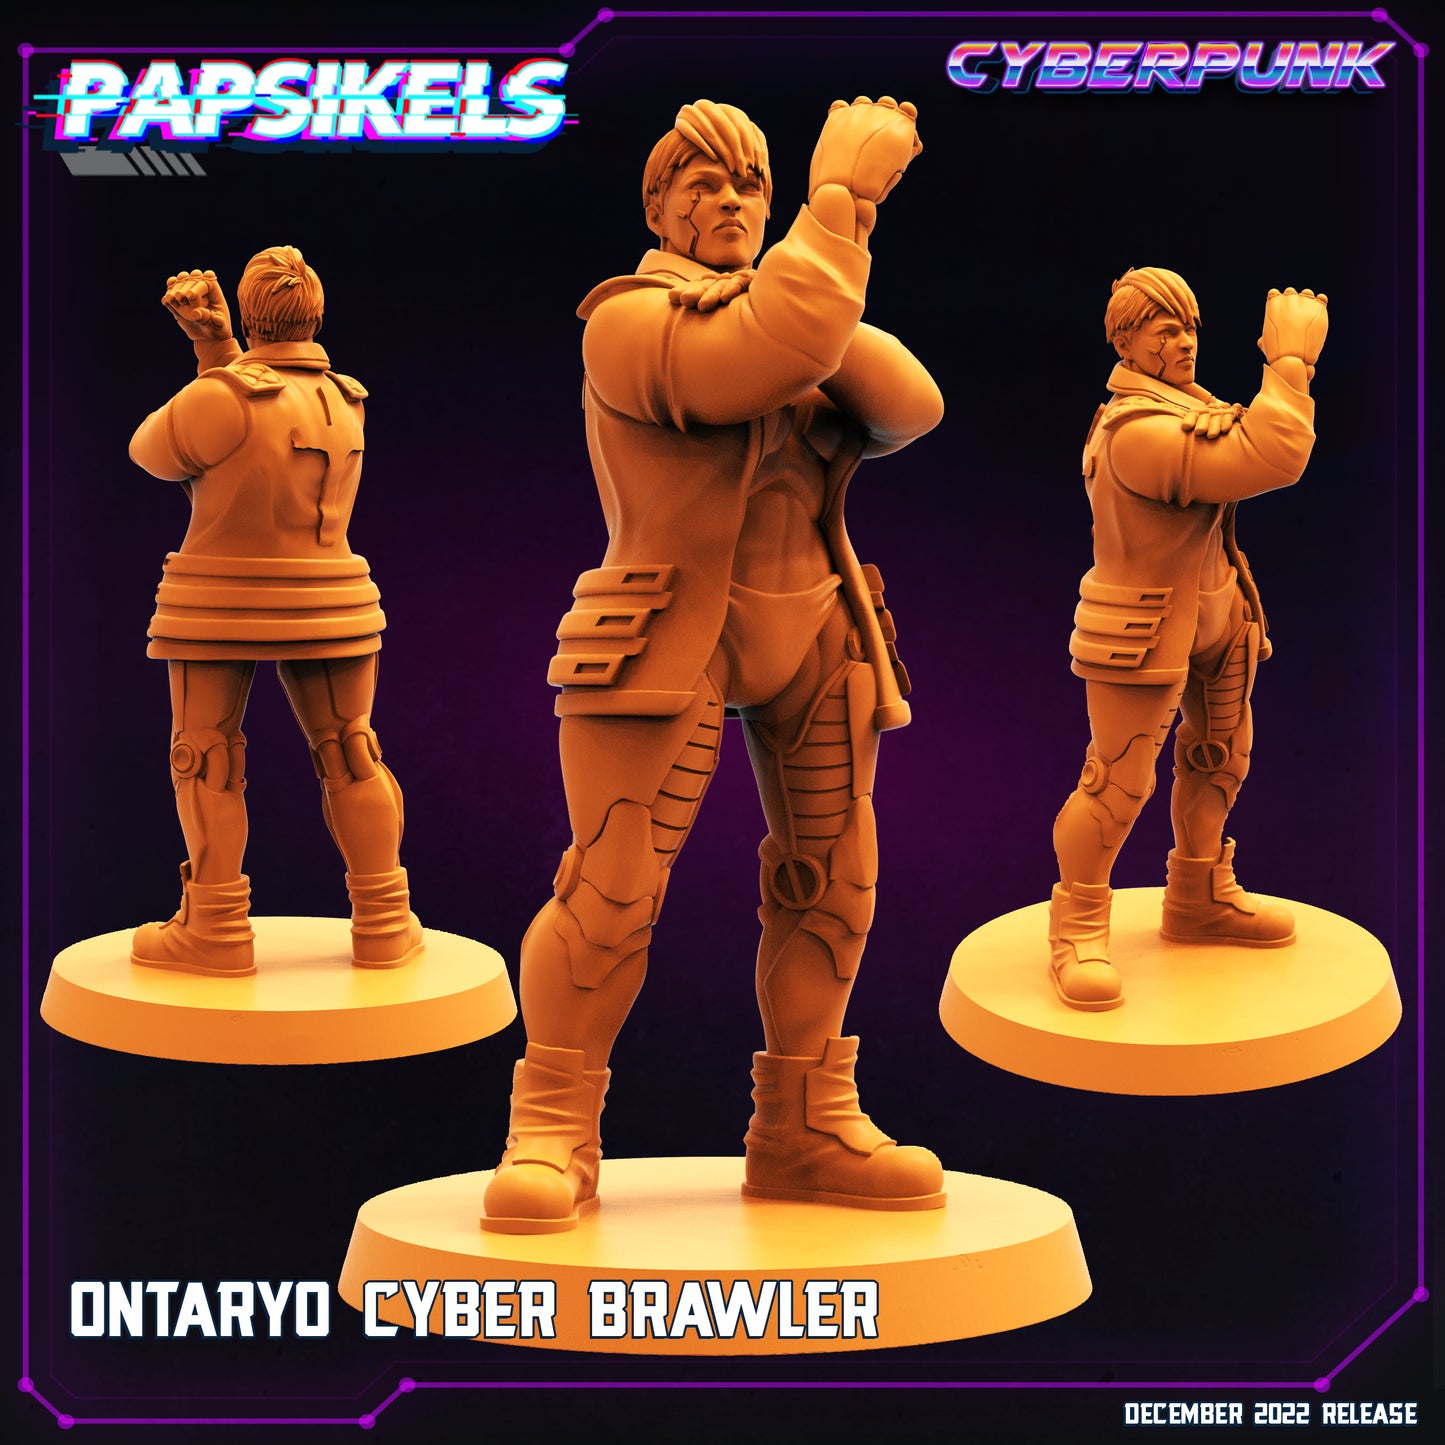 Ontaryo Cyber Brawler